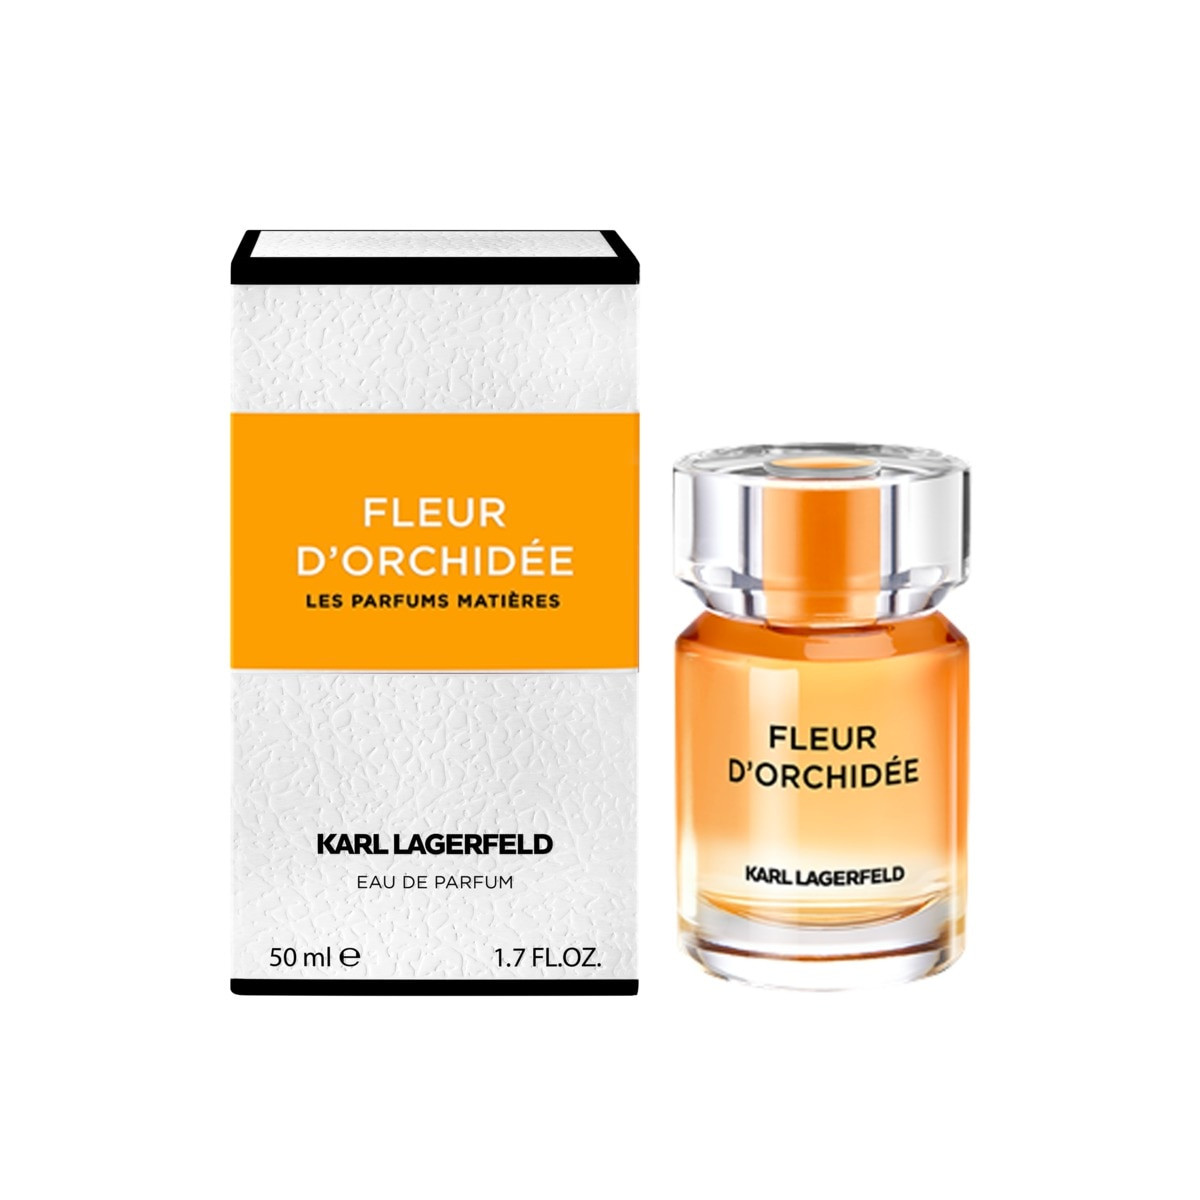 Lagerfeld - Matieres Fleur Orchid Eau de Parfum -  50 ml